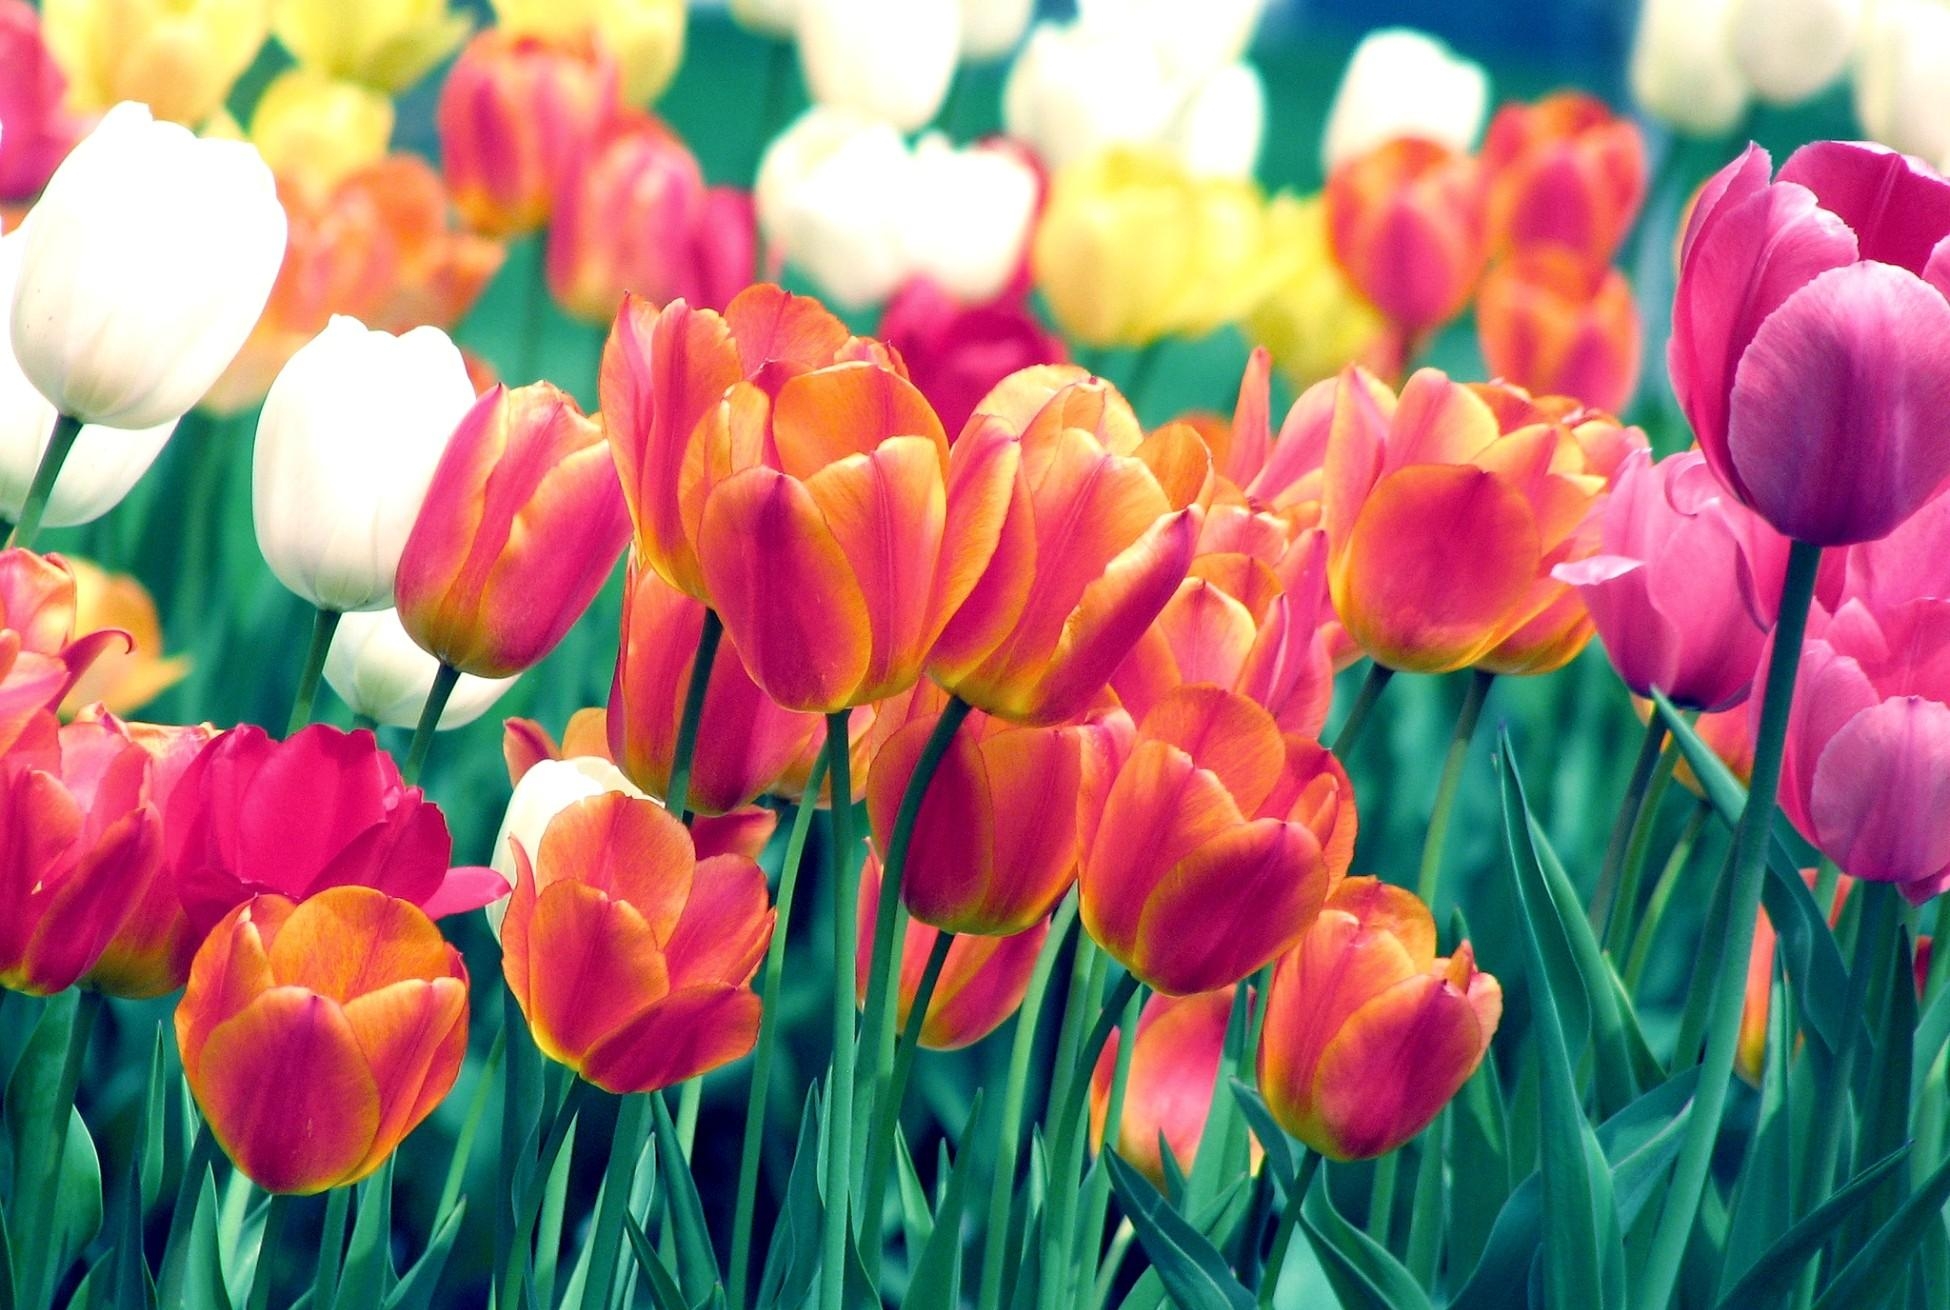 Скачать обои бесплатно Резкость, Цветы, Клумба, Тюльпаны, Весна картинка на рабочий стол ПК